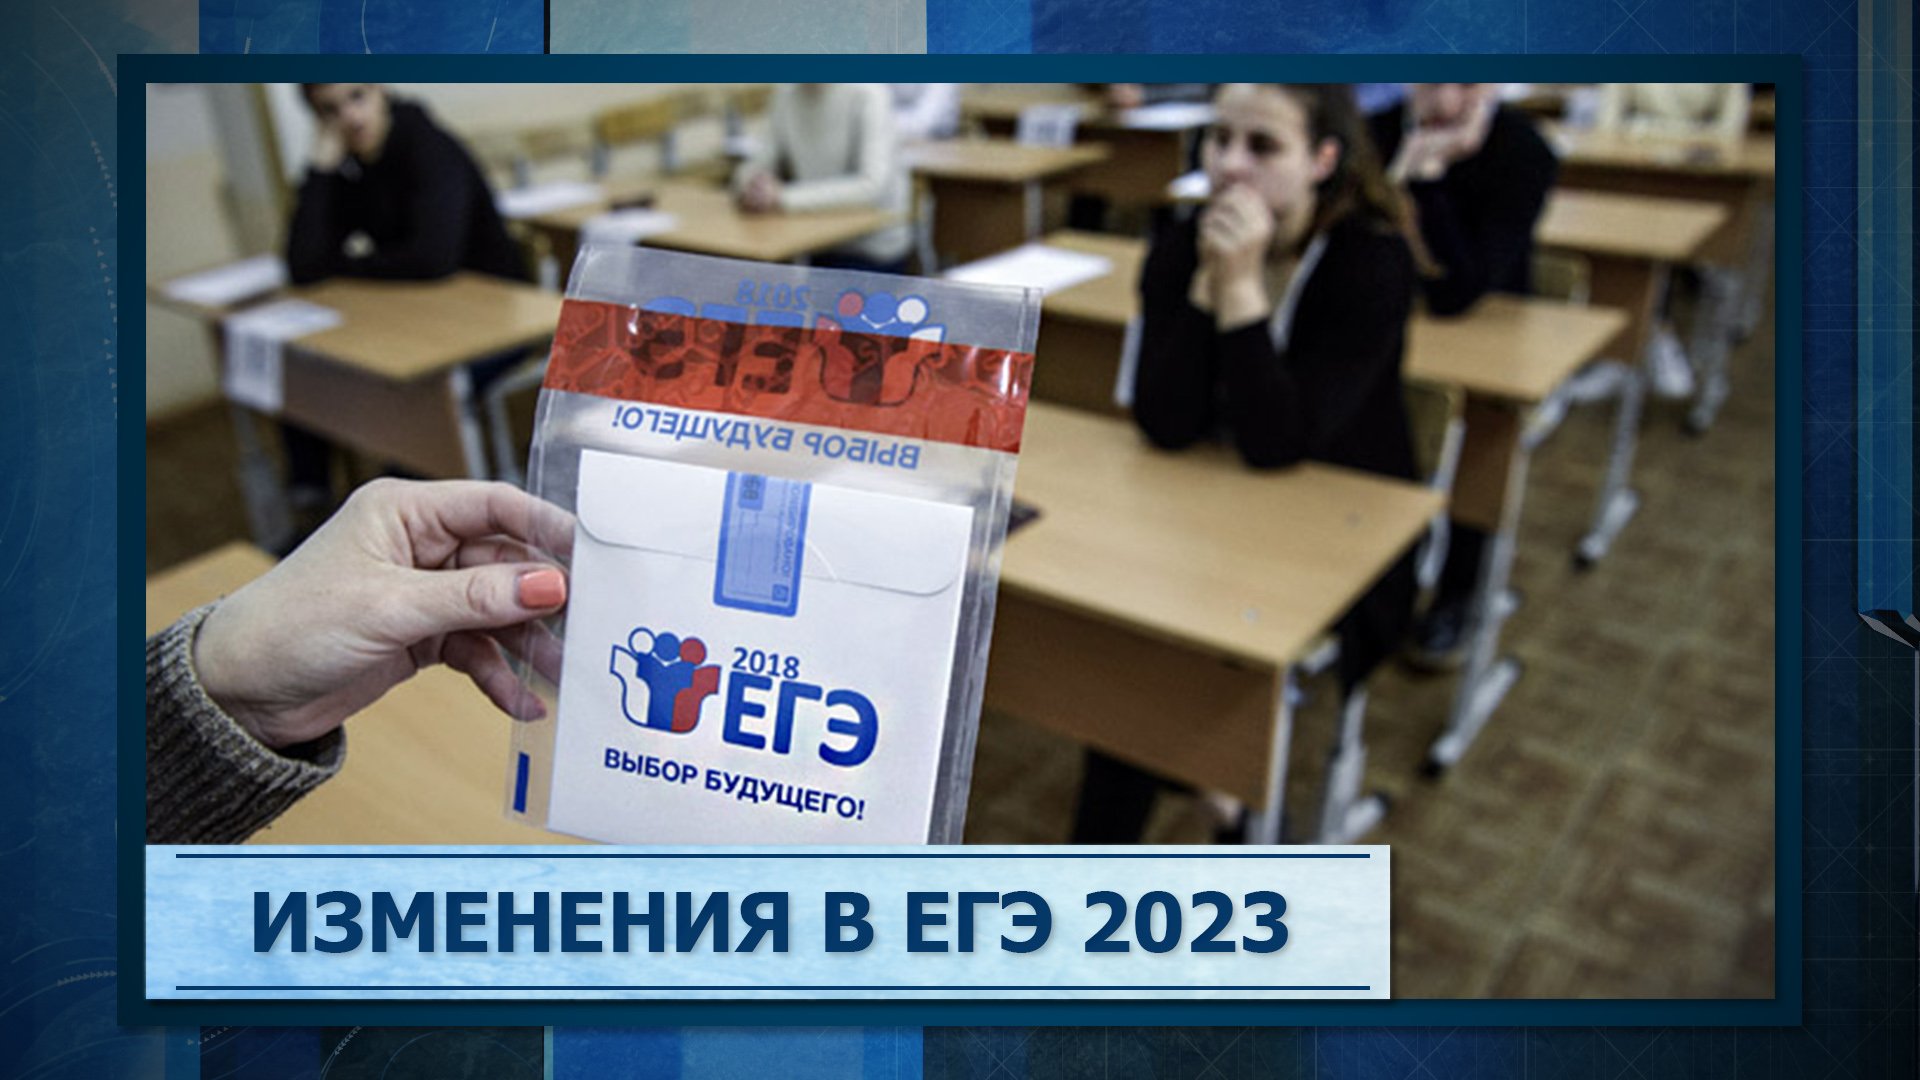 Изменение егэ 2023. Изменения в ЕГЭ 2023. Изменения в ЕГЭ. ЕГЭ по русскому языку 2023. Проект ЕГЭ 2023.